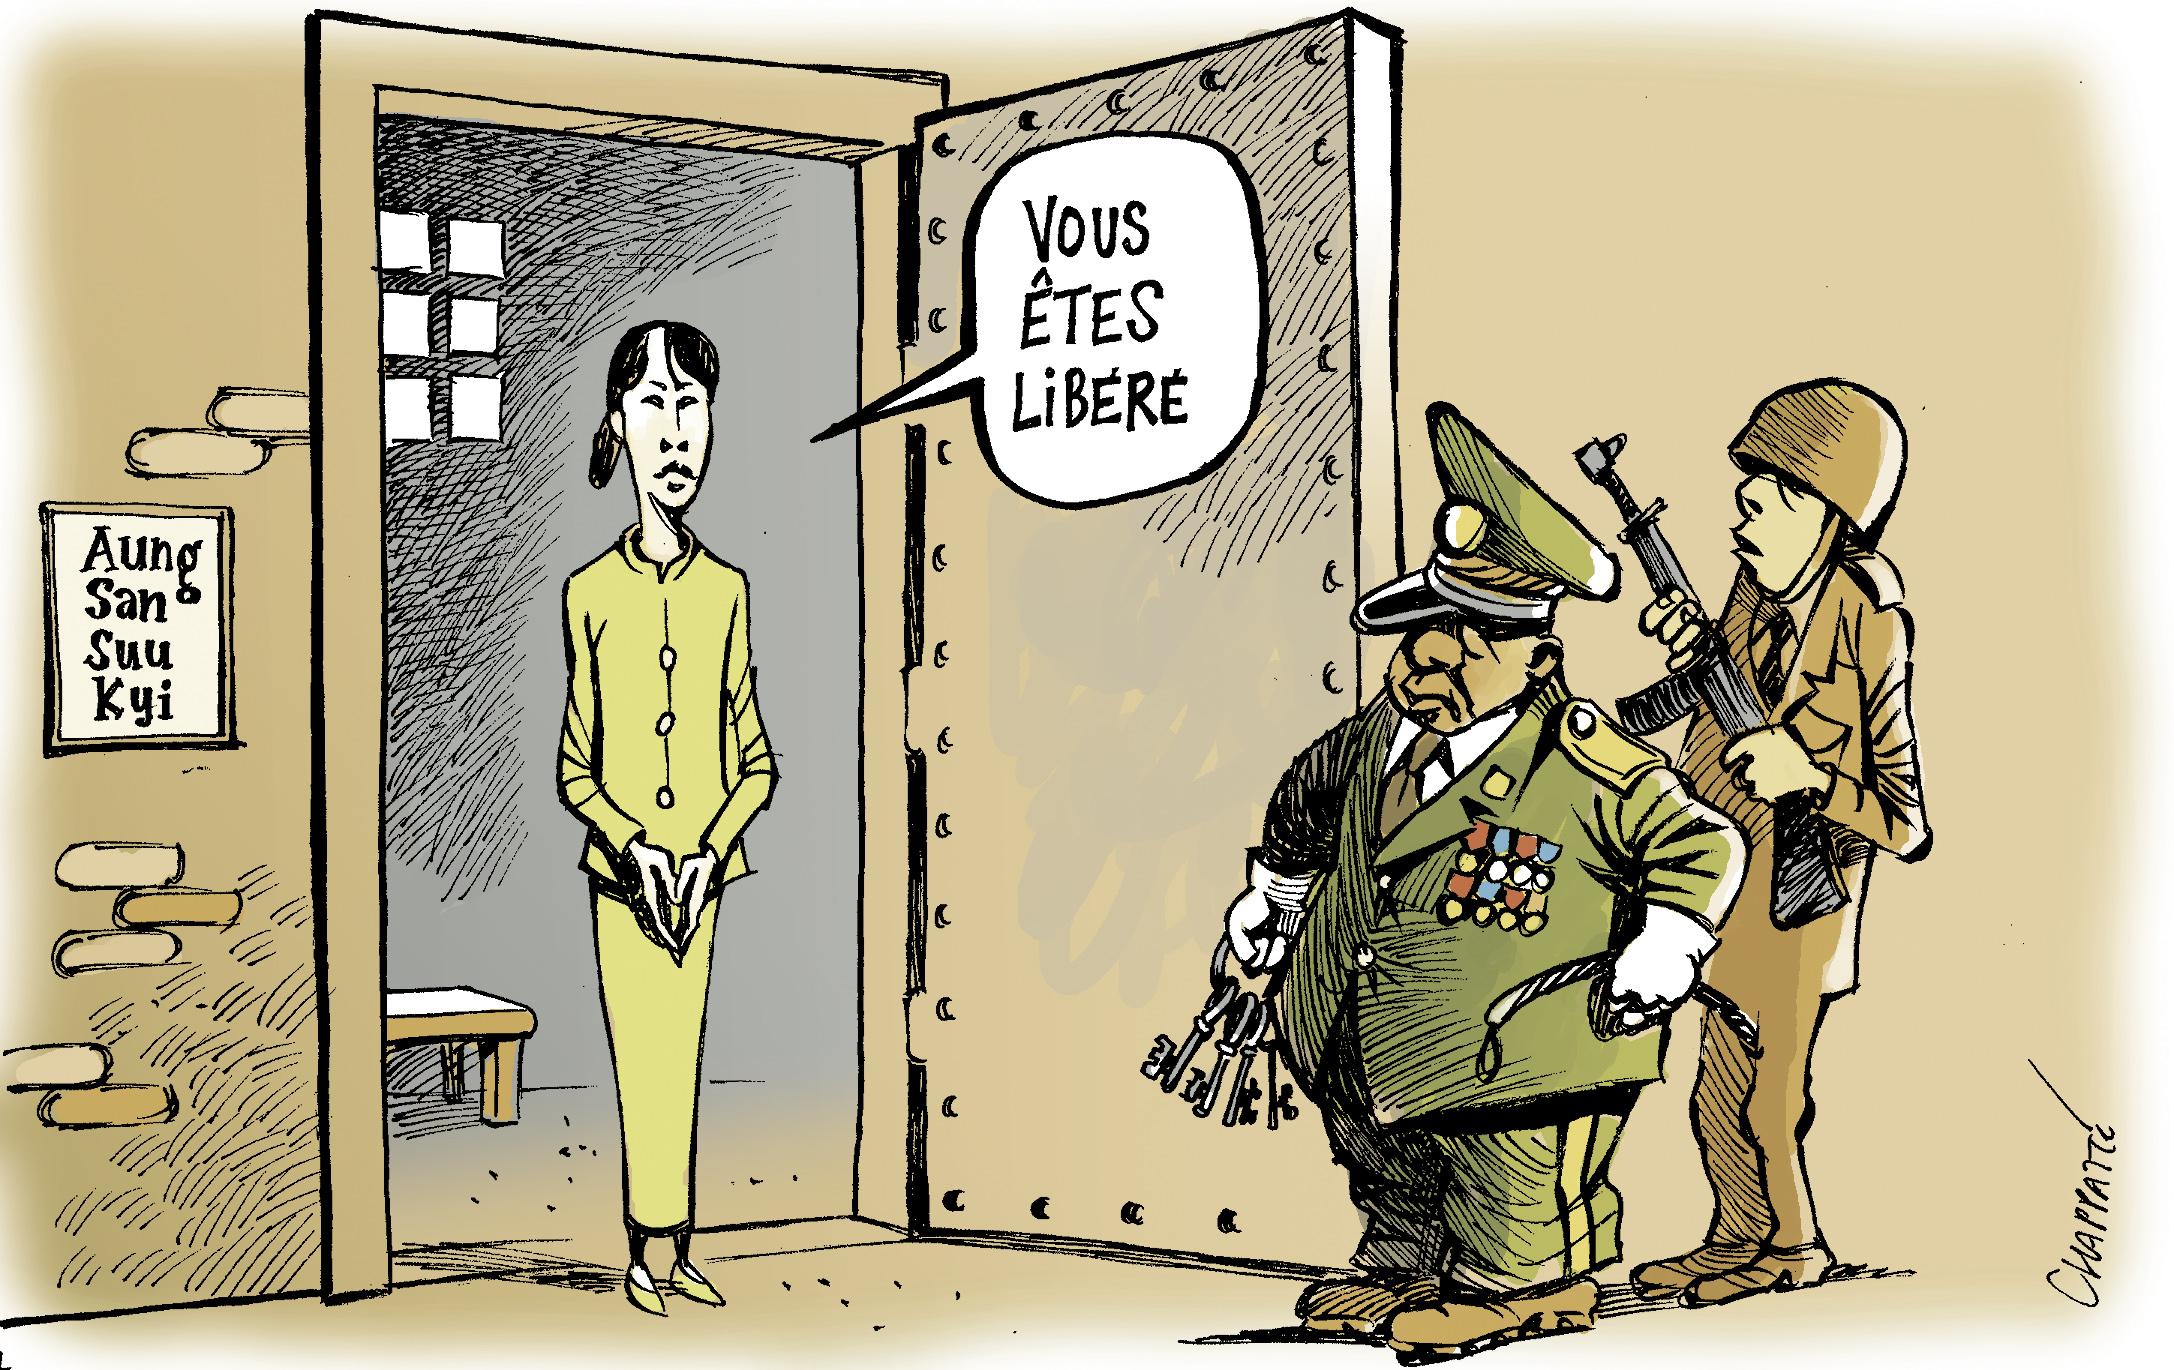 Libération d'Aung San Suu Kyi